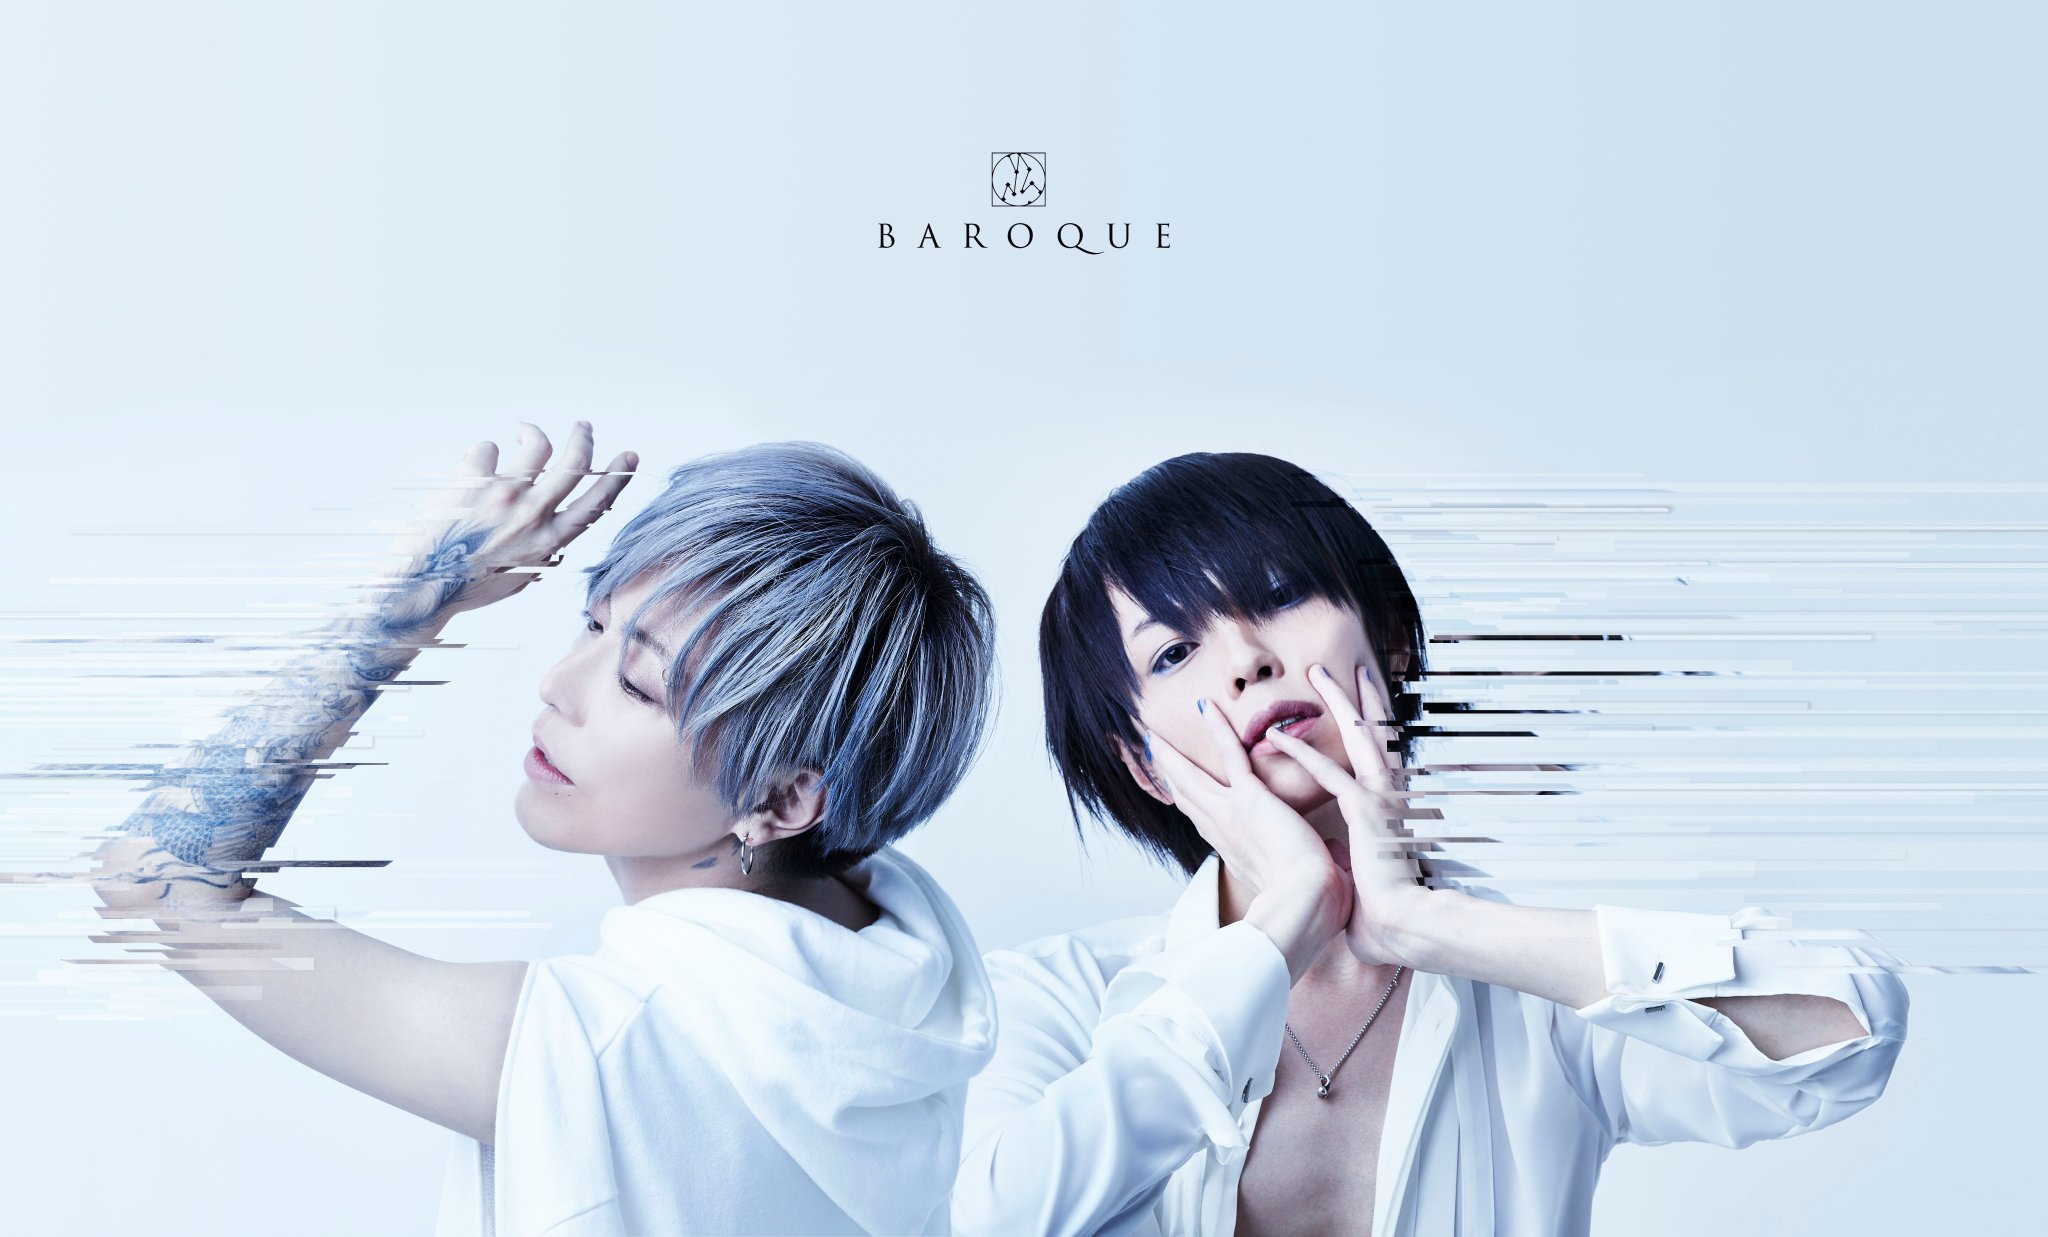 BAROQUE new full album: “PUER ET PUELLA”